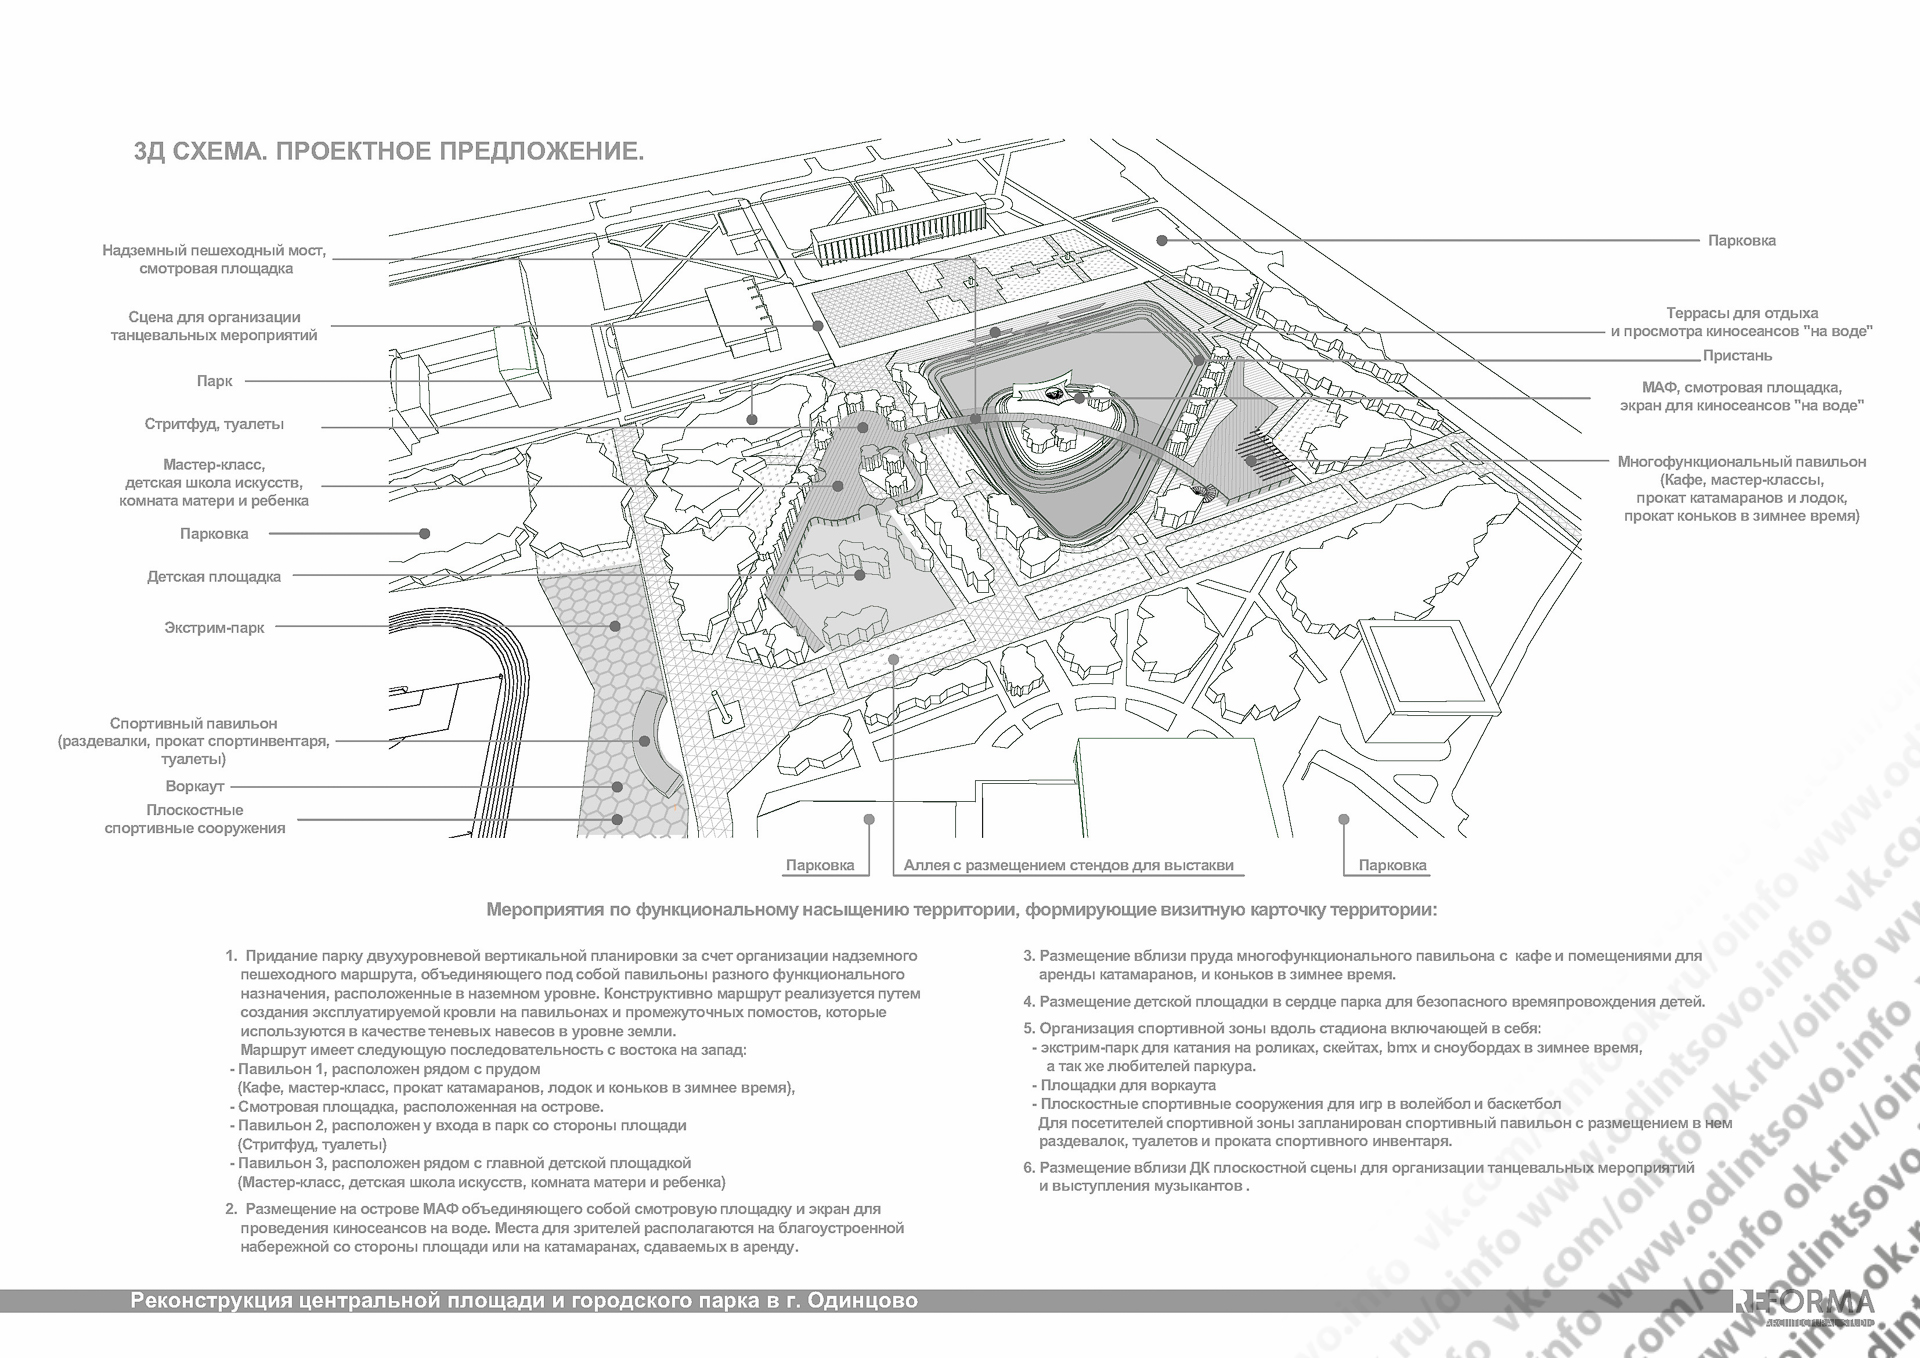 Реконструкция предложение. Проектное предложение парка. Схема площади Одинцово. Площадь плоскостных спортивных сооружений. Площадка для размещения павильона.